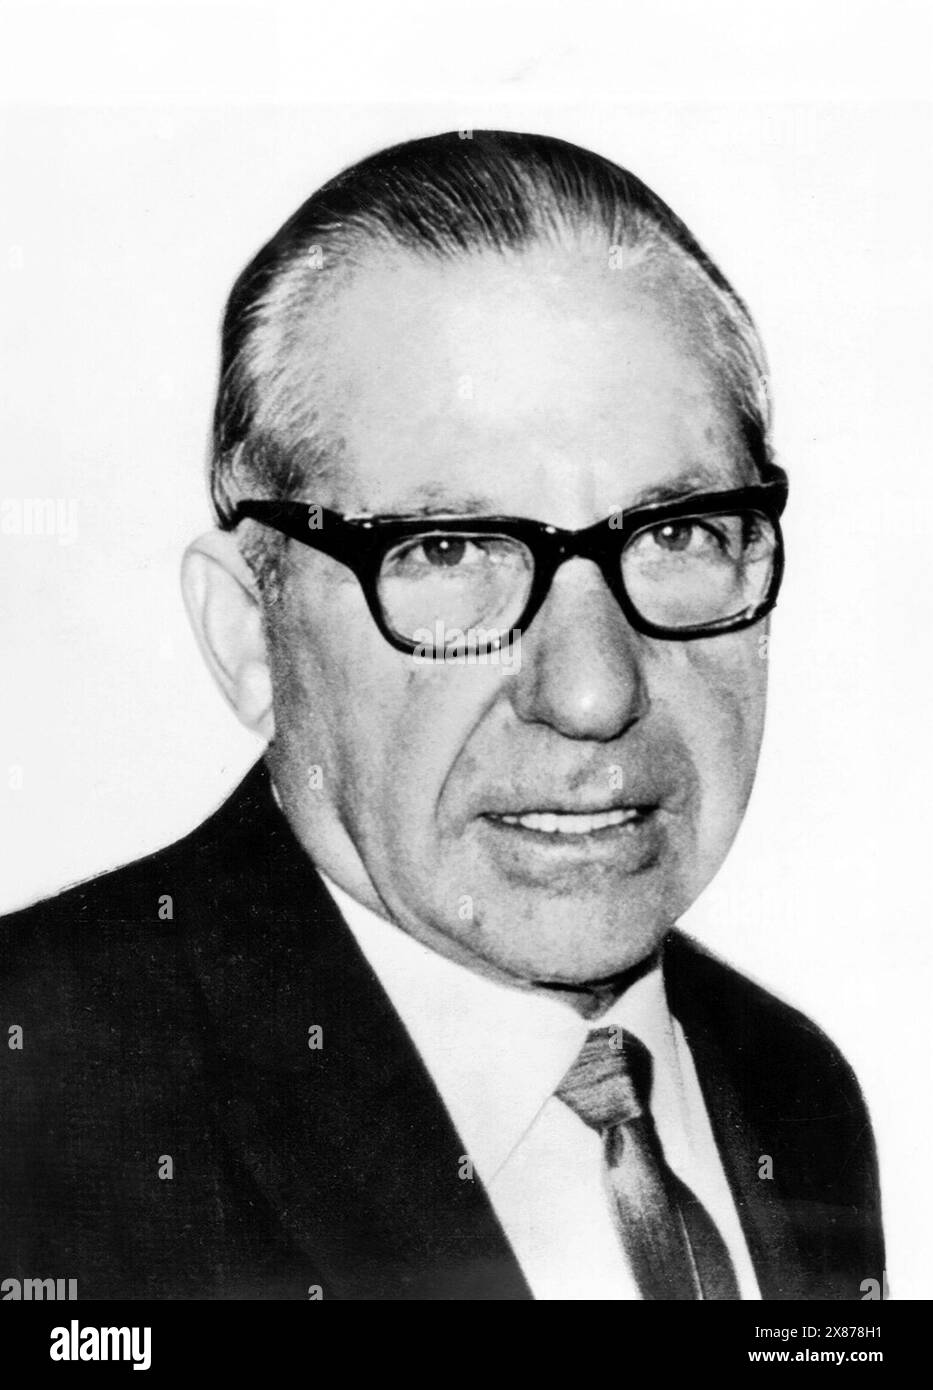 Frank Costello. Portrait of the American crime boss, Frank Costello (b. Francesco Castiglia, 1891-1973) in 1964 Stock Photo